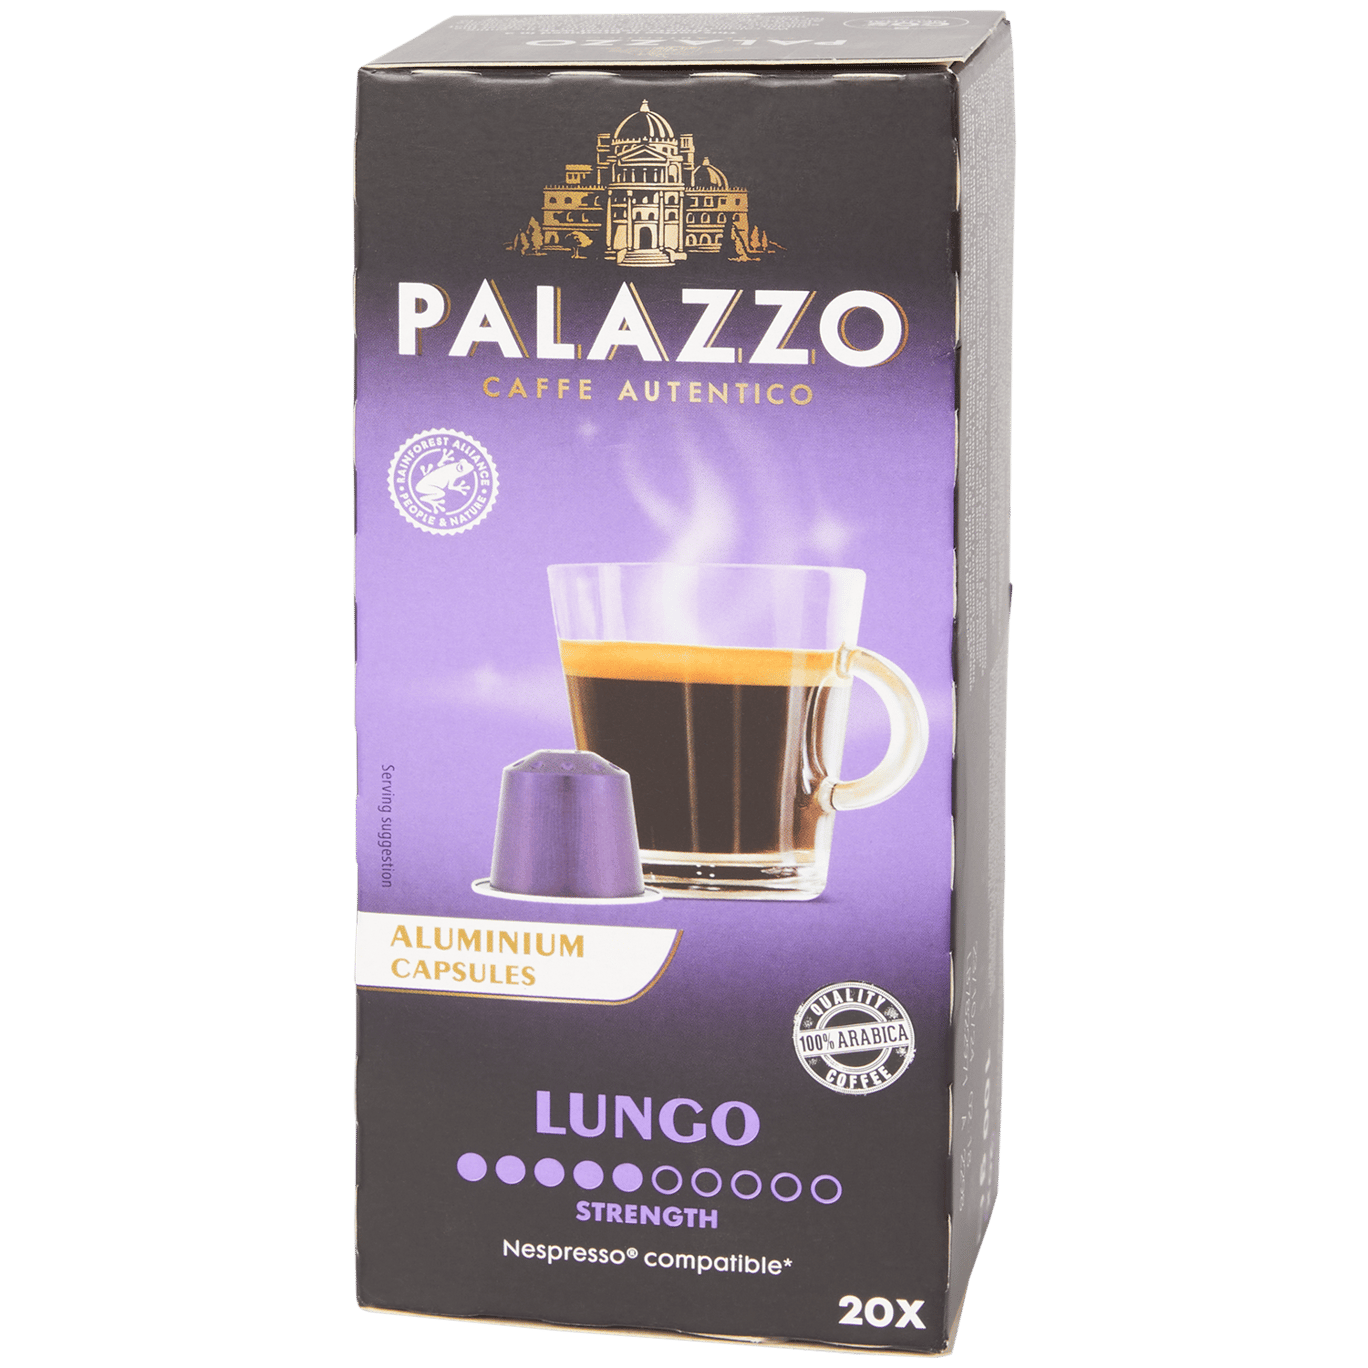 slikken eenheid ginder Palazzo koffiecups Lungo 20 stuks | Action.com